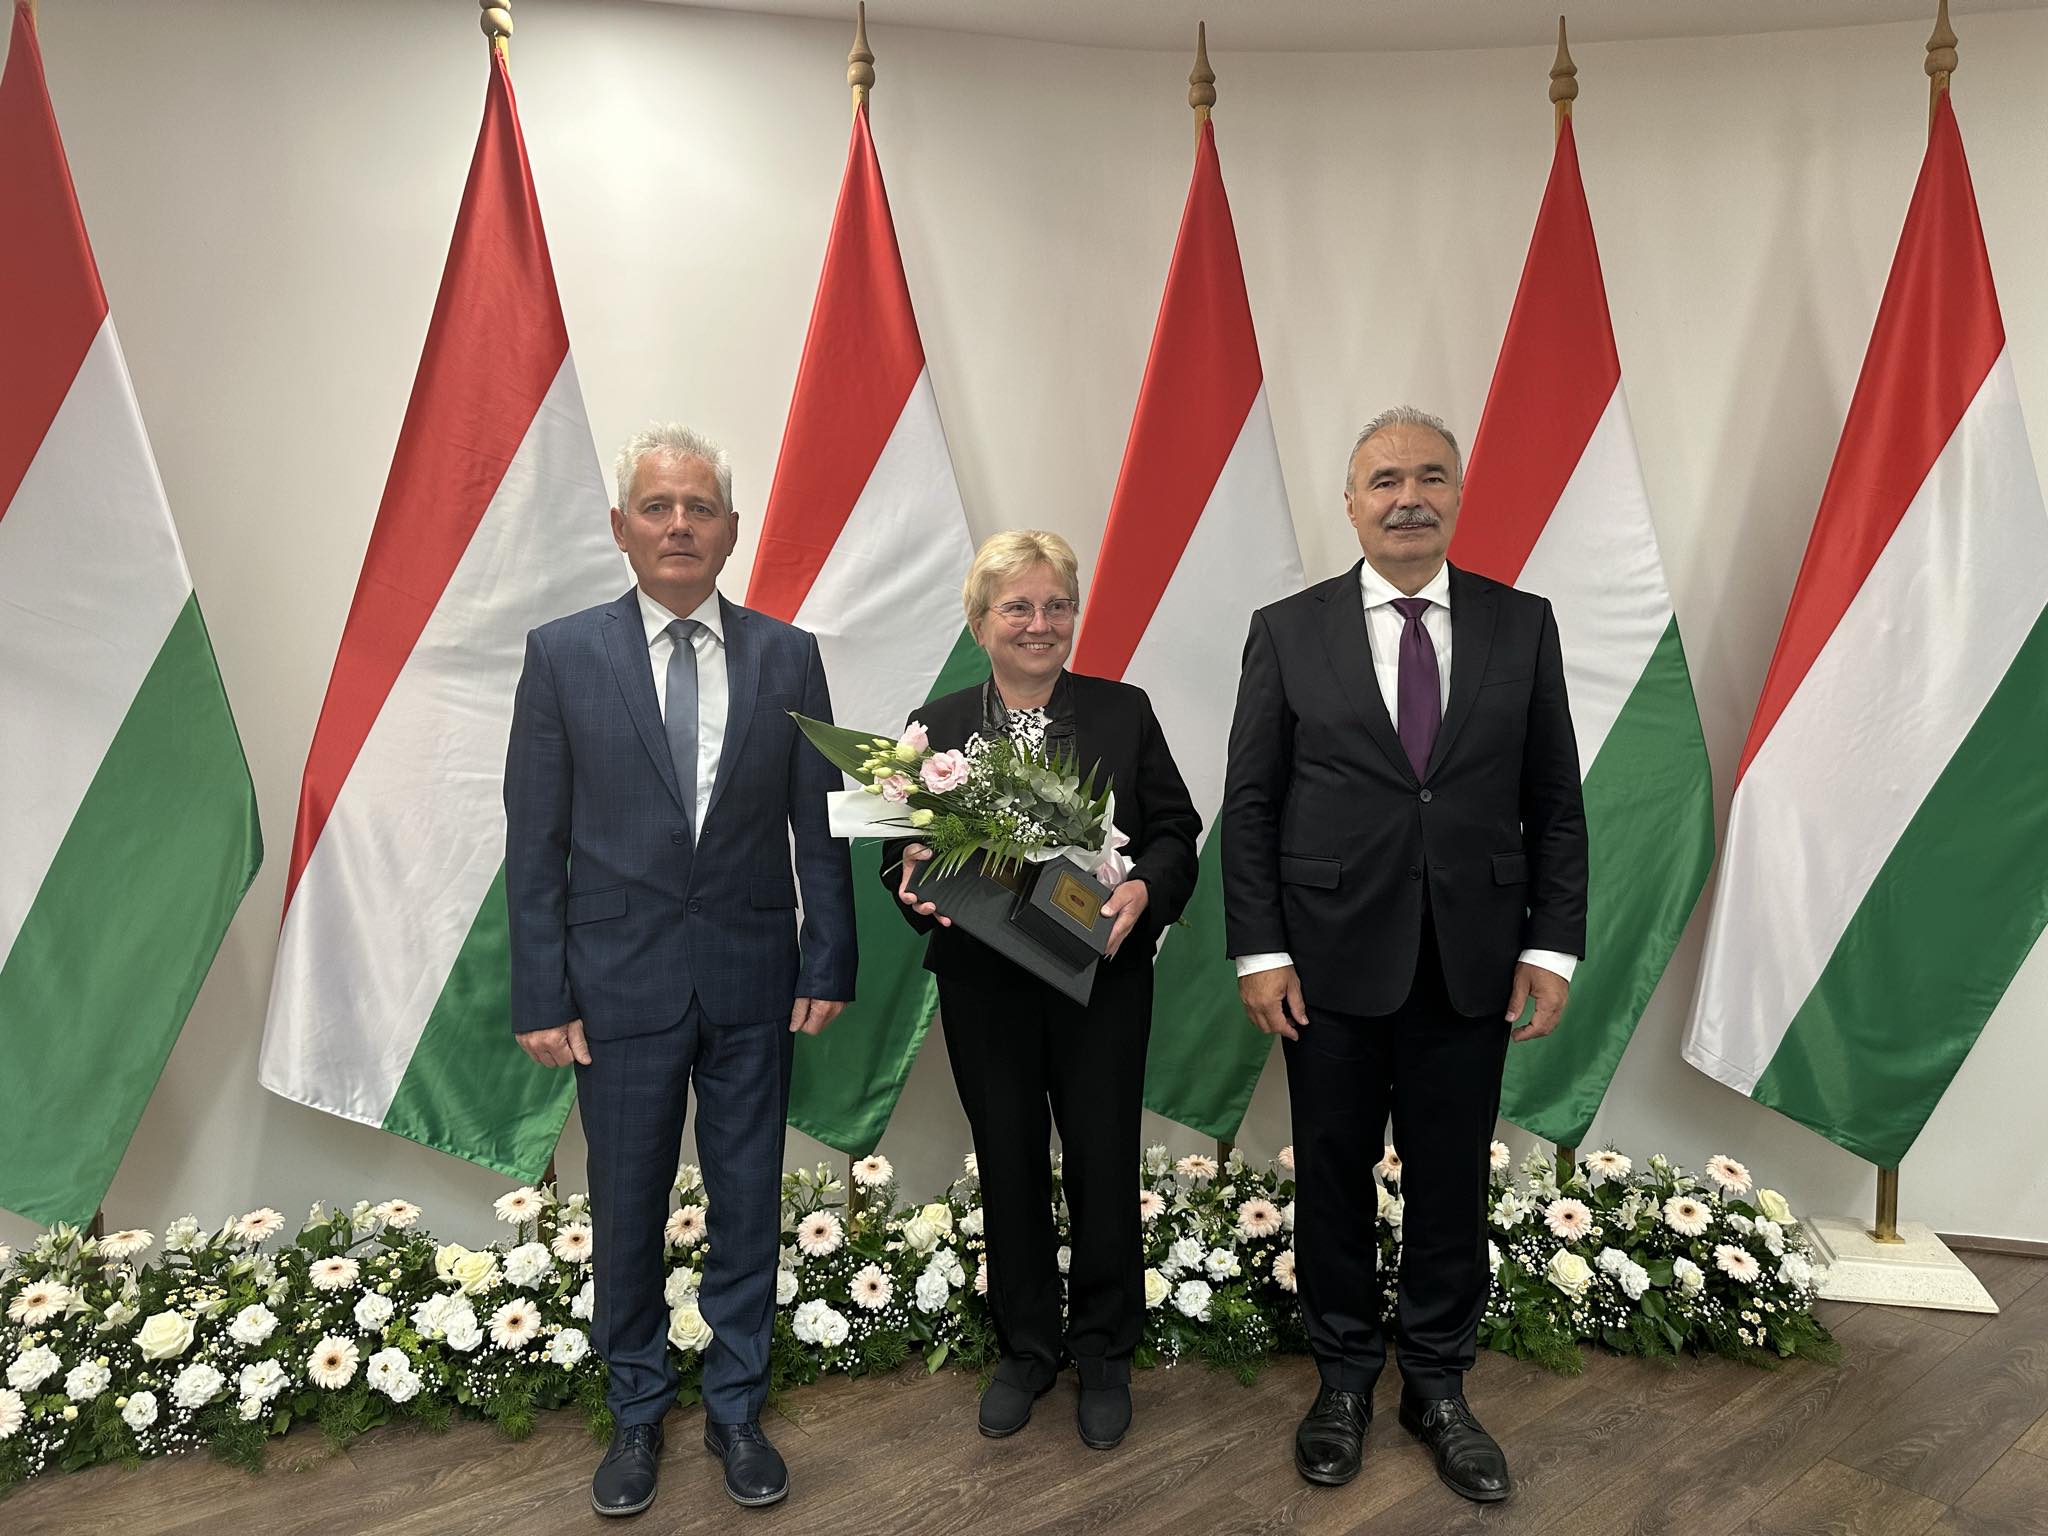 Több magyar zászló előtt hárman állnak sorban. A középső, virágcsokorral és kitüntetéssel tartó személy mellett két öltönyös férfi áll. A háttérben a padló mentén virágdíszek láthatók.